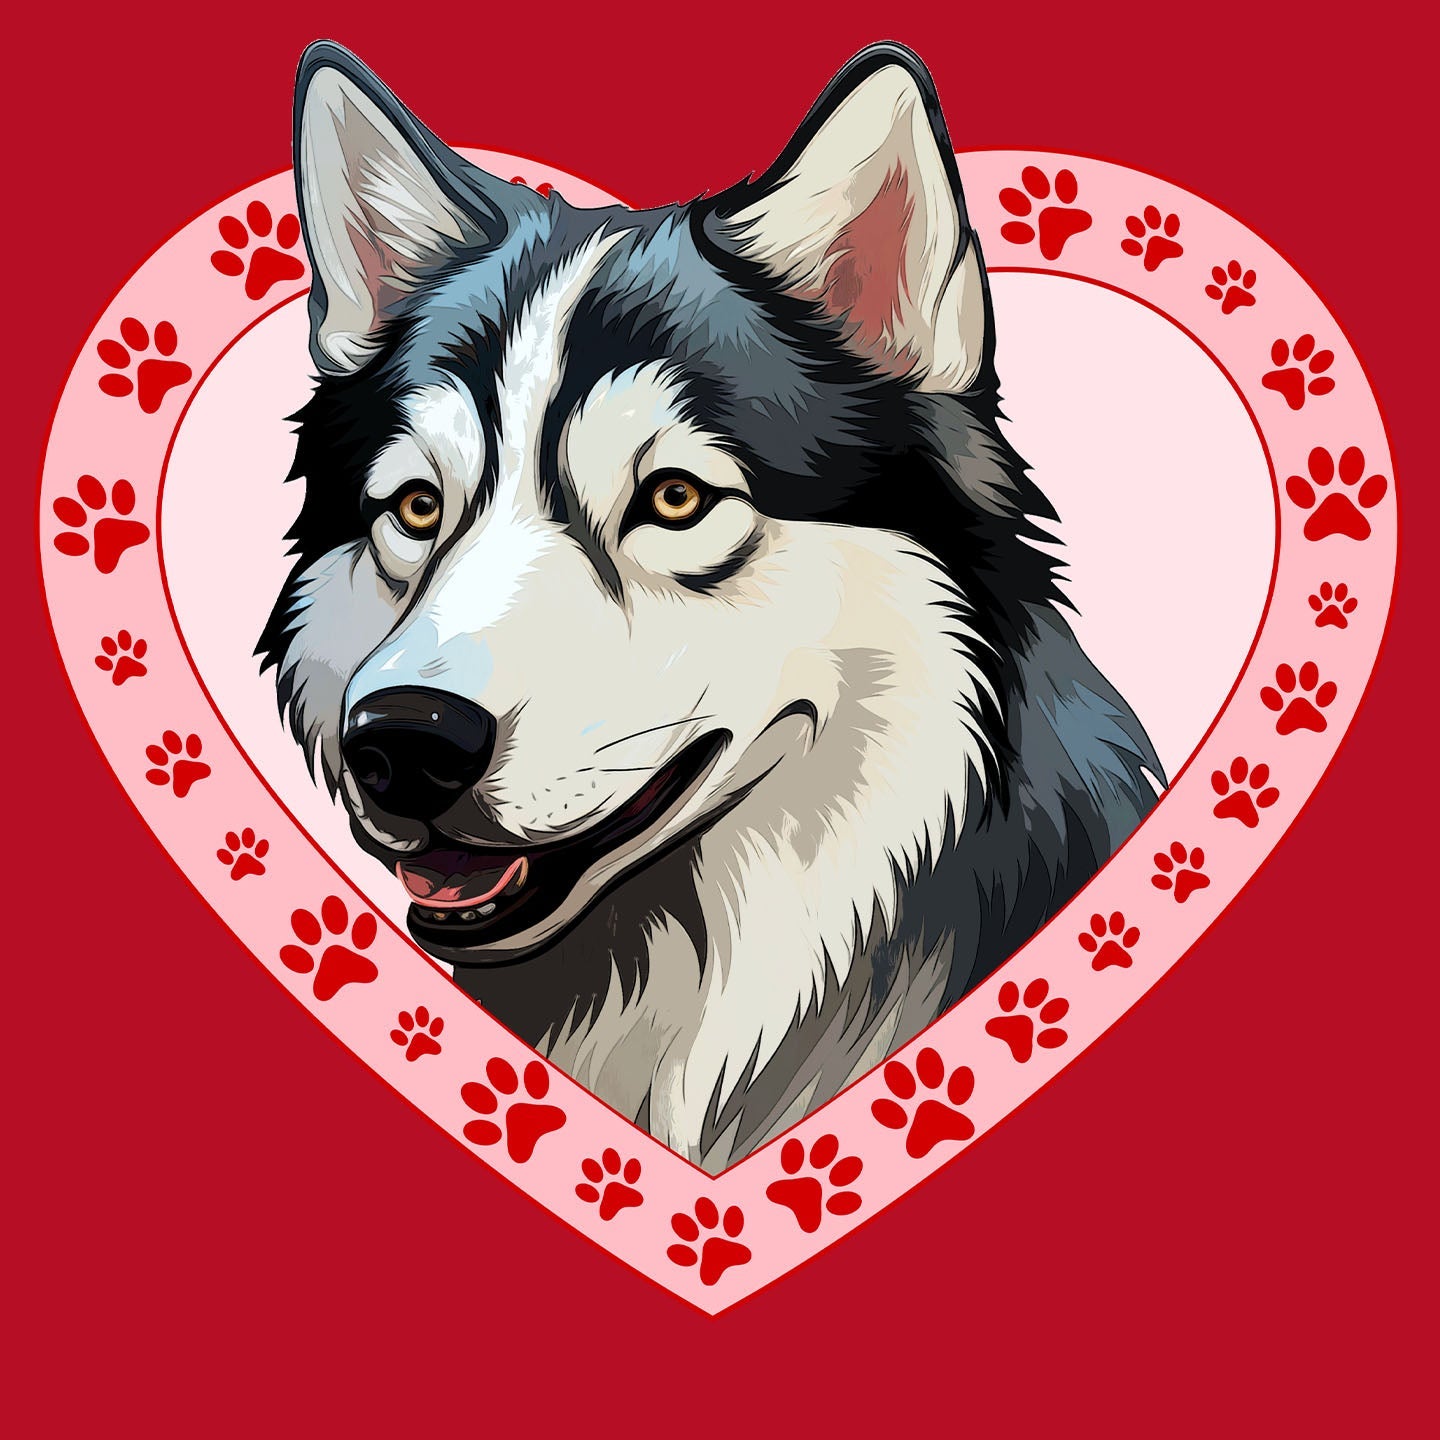 Siberian Husky Illustration In Heart - Women's V-Neck T-Shirt